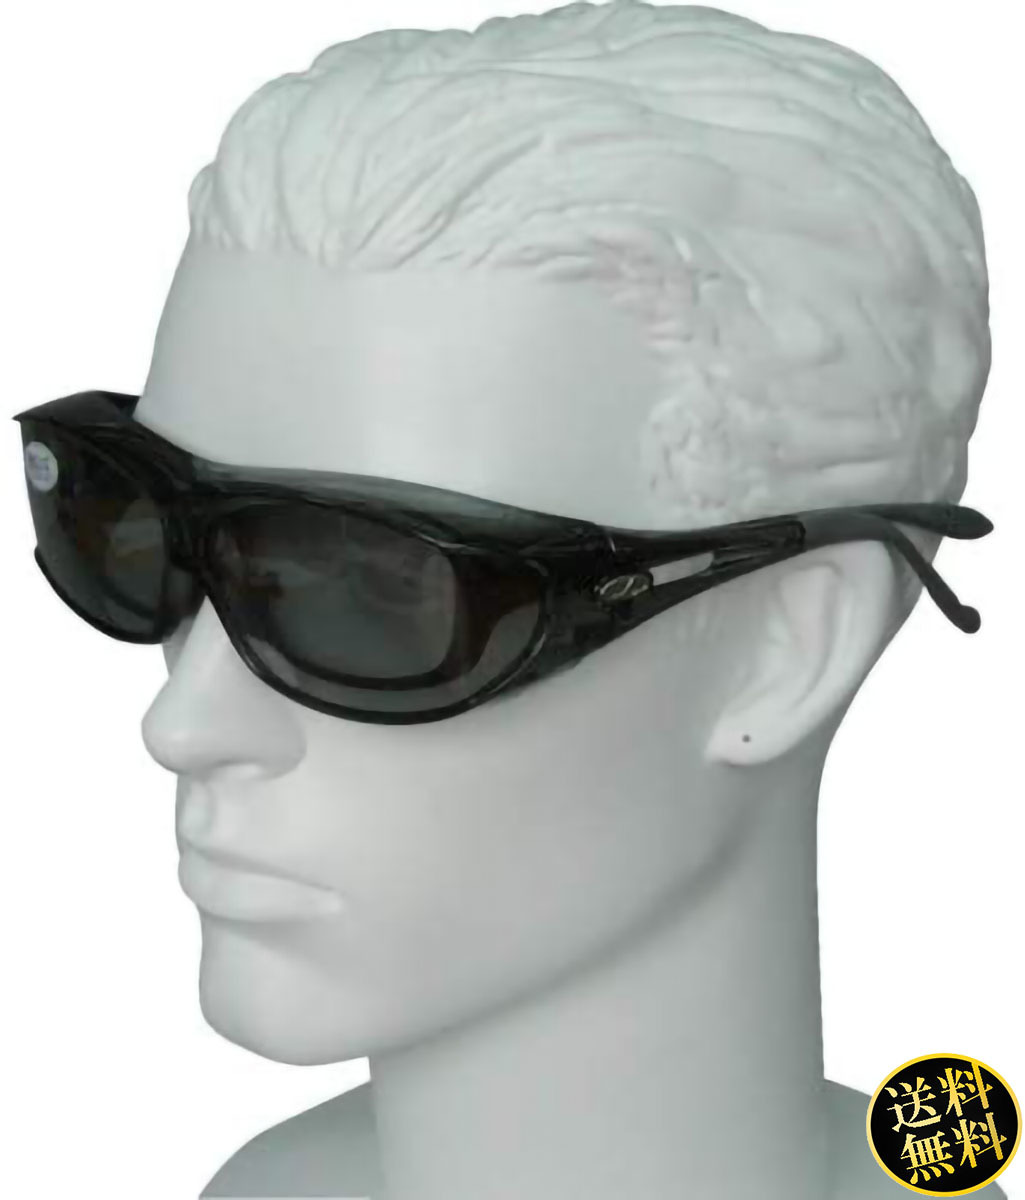 売れ筋商品 UVカット大型メガネ対応 偏光レンズ オーバーサングラス